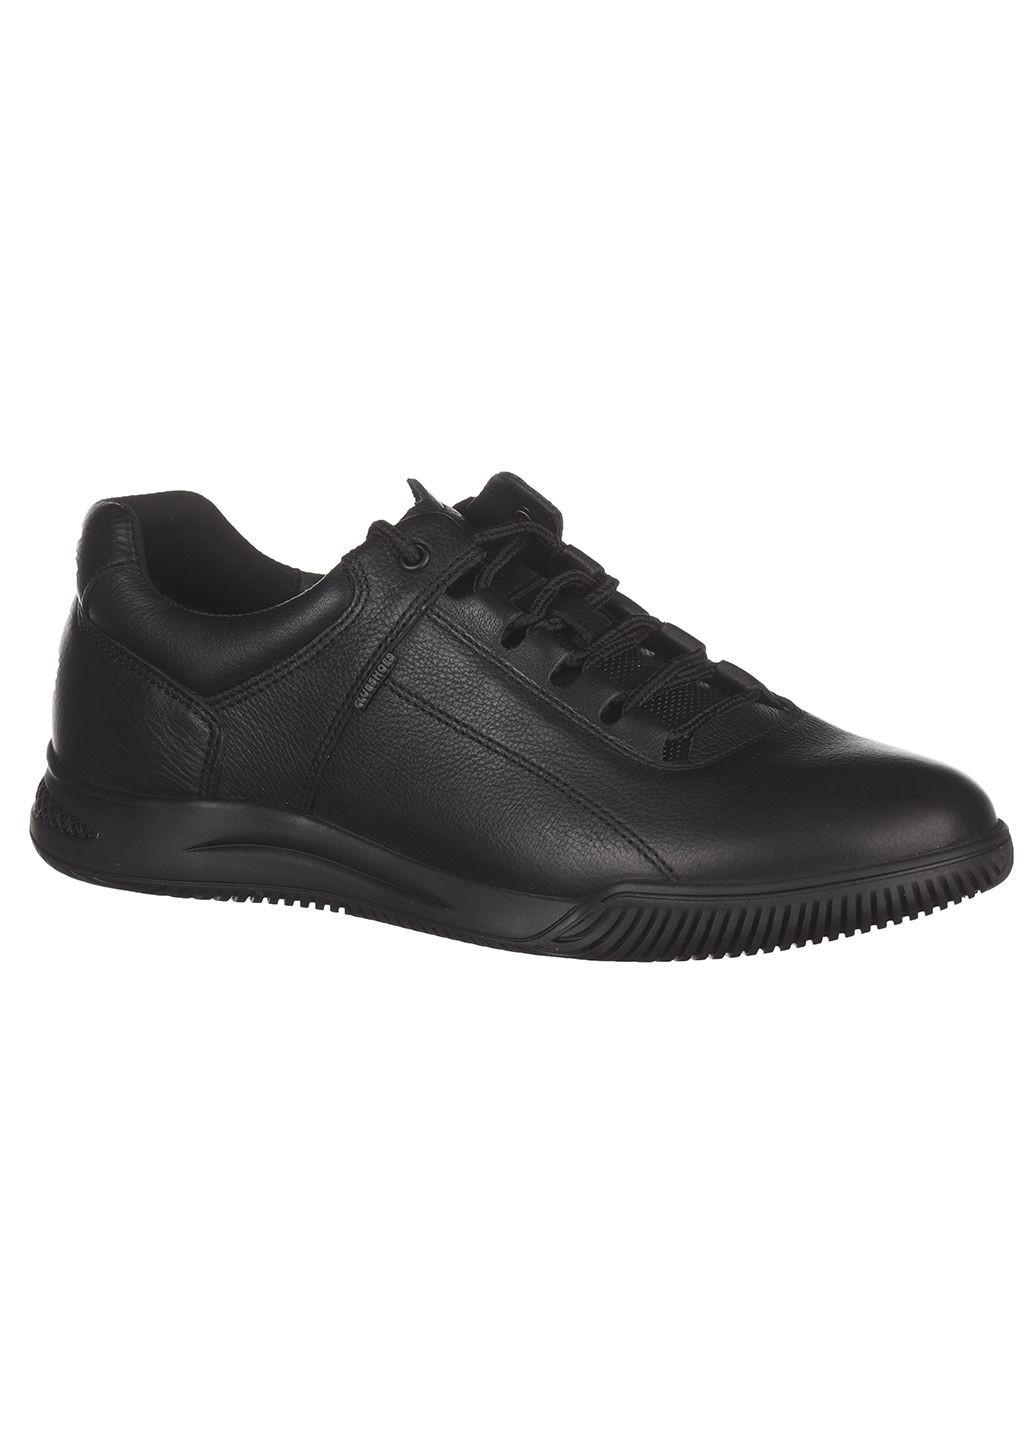 Черные демисезонные кроссовки из кожи для мужчин Clubshoes